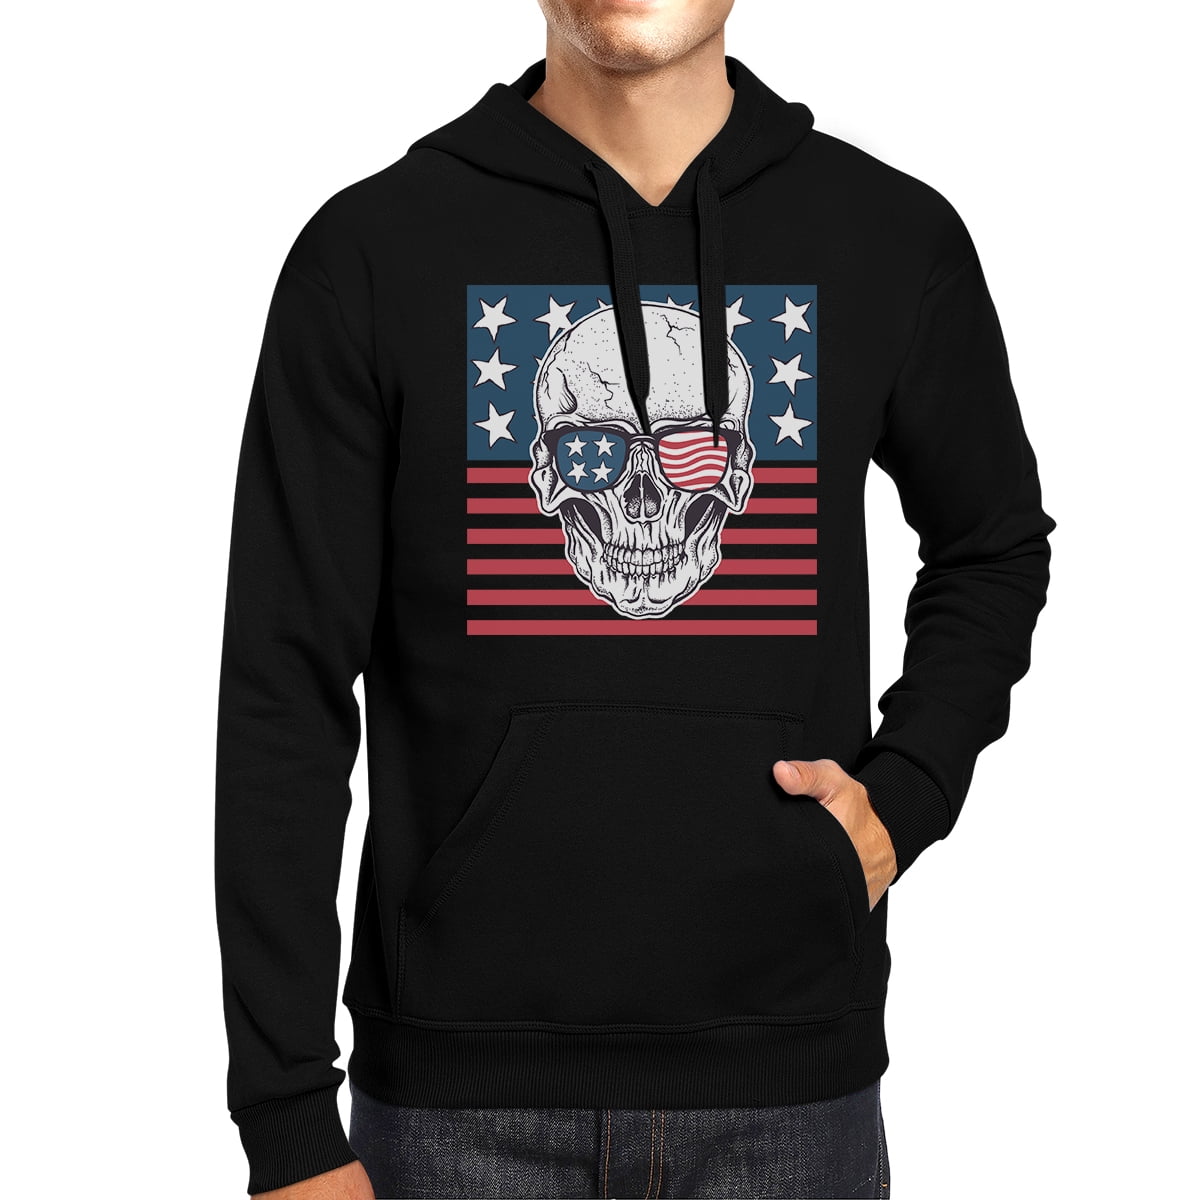 Dark American Skull Flag Womens Long Sleeve Pullover Hooded Sweatshirt Top Hoodie with Fleece Lining 